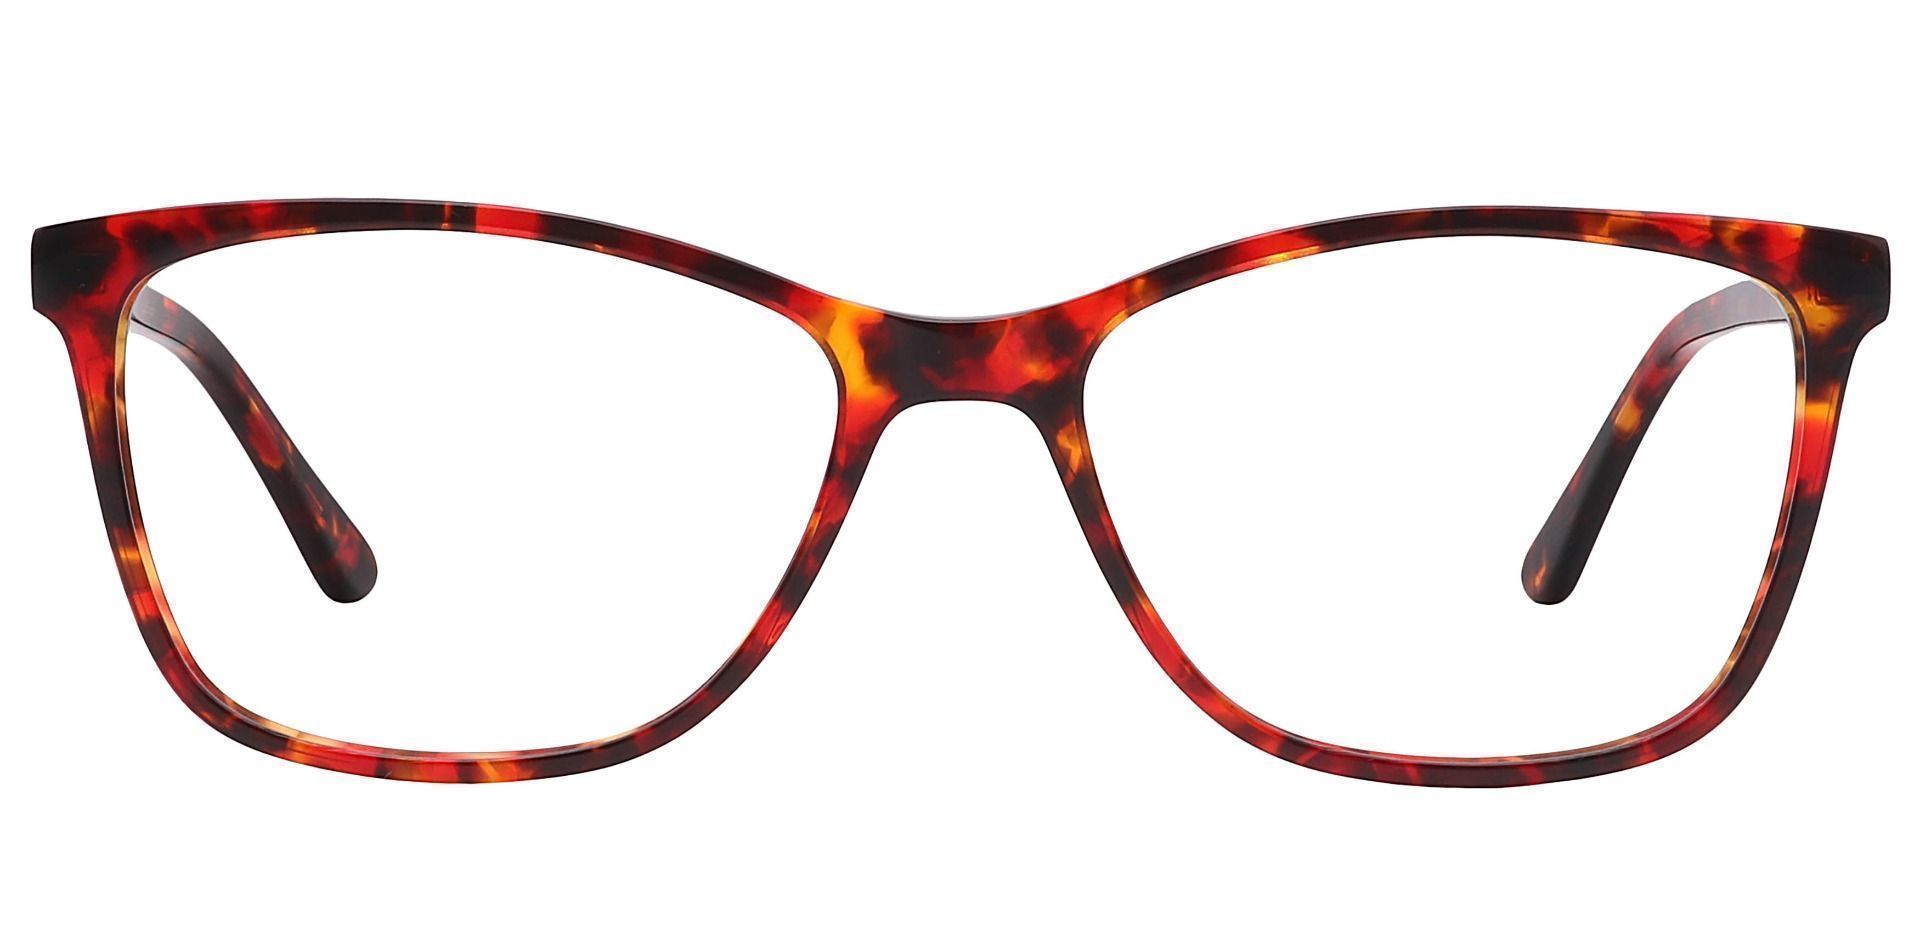 Antonia Square Non-Rx Glasses - Red